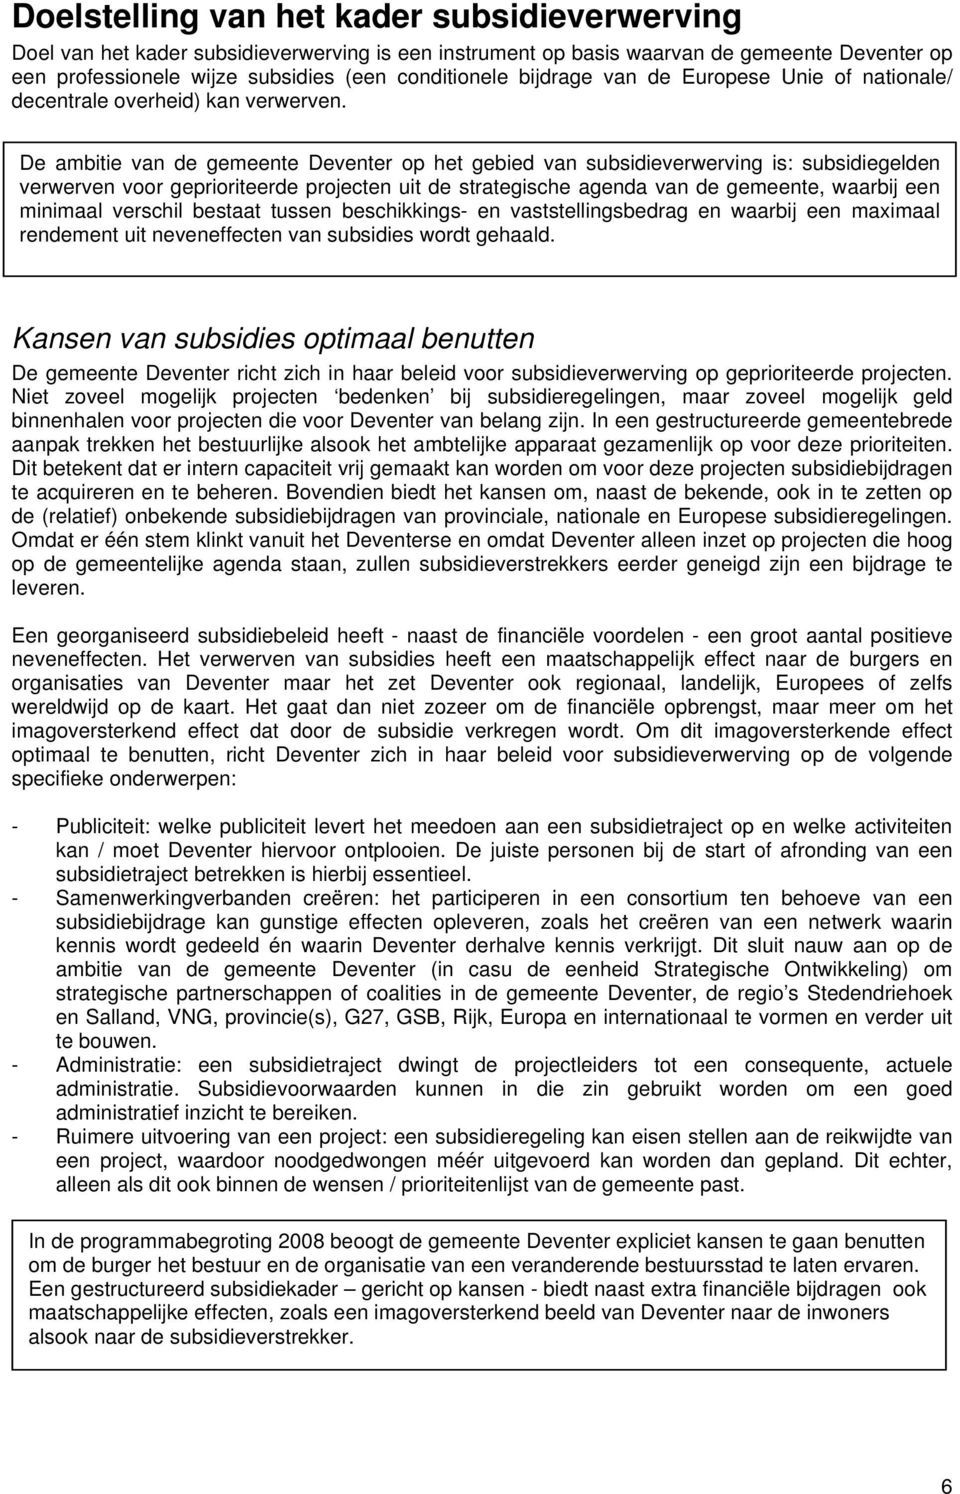 De ambitie van de gemeente Deventer op het gebied van subsidieverwerving is: subsidiegelden verwerven voor geprioriteerde projecten uit de strategische agenda van de gemeente, waarbij een minimaal